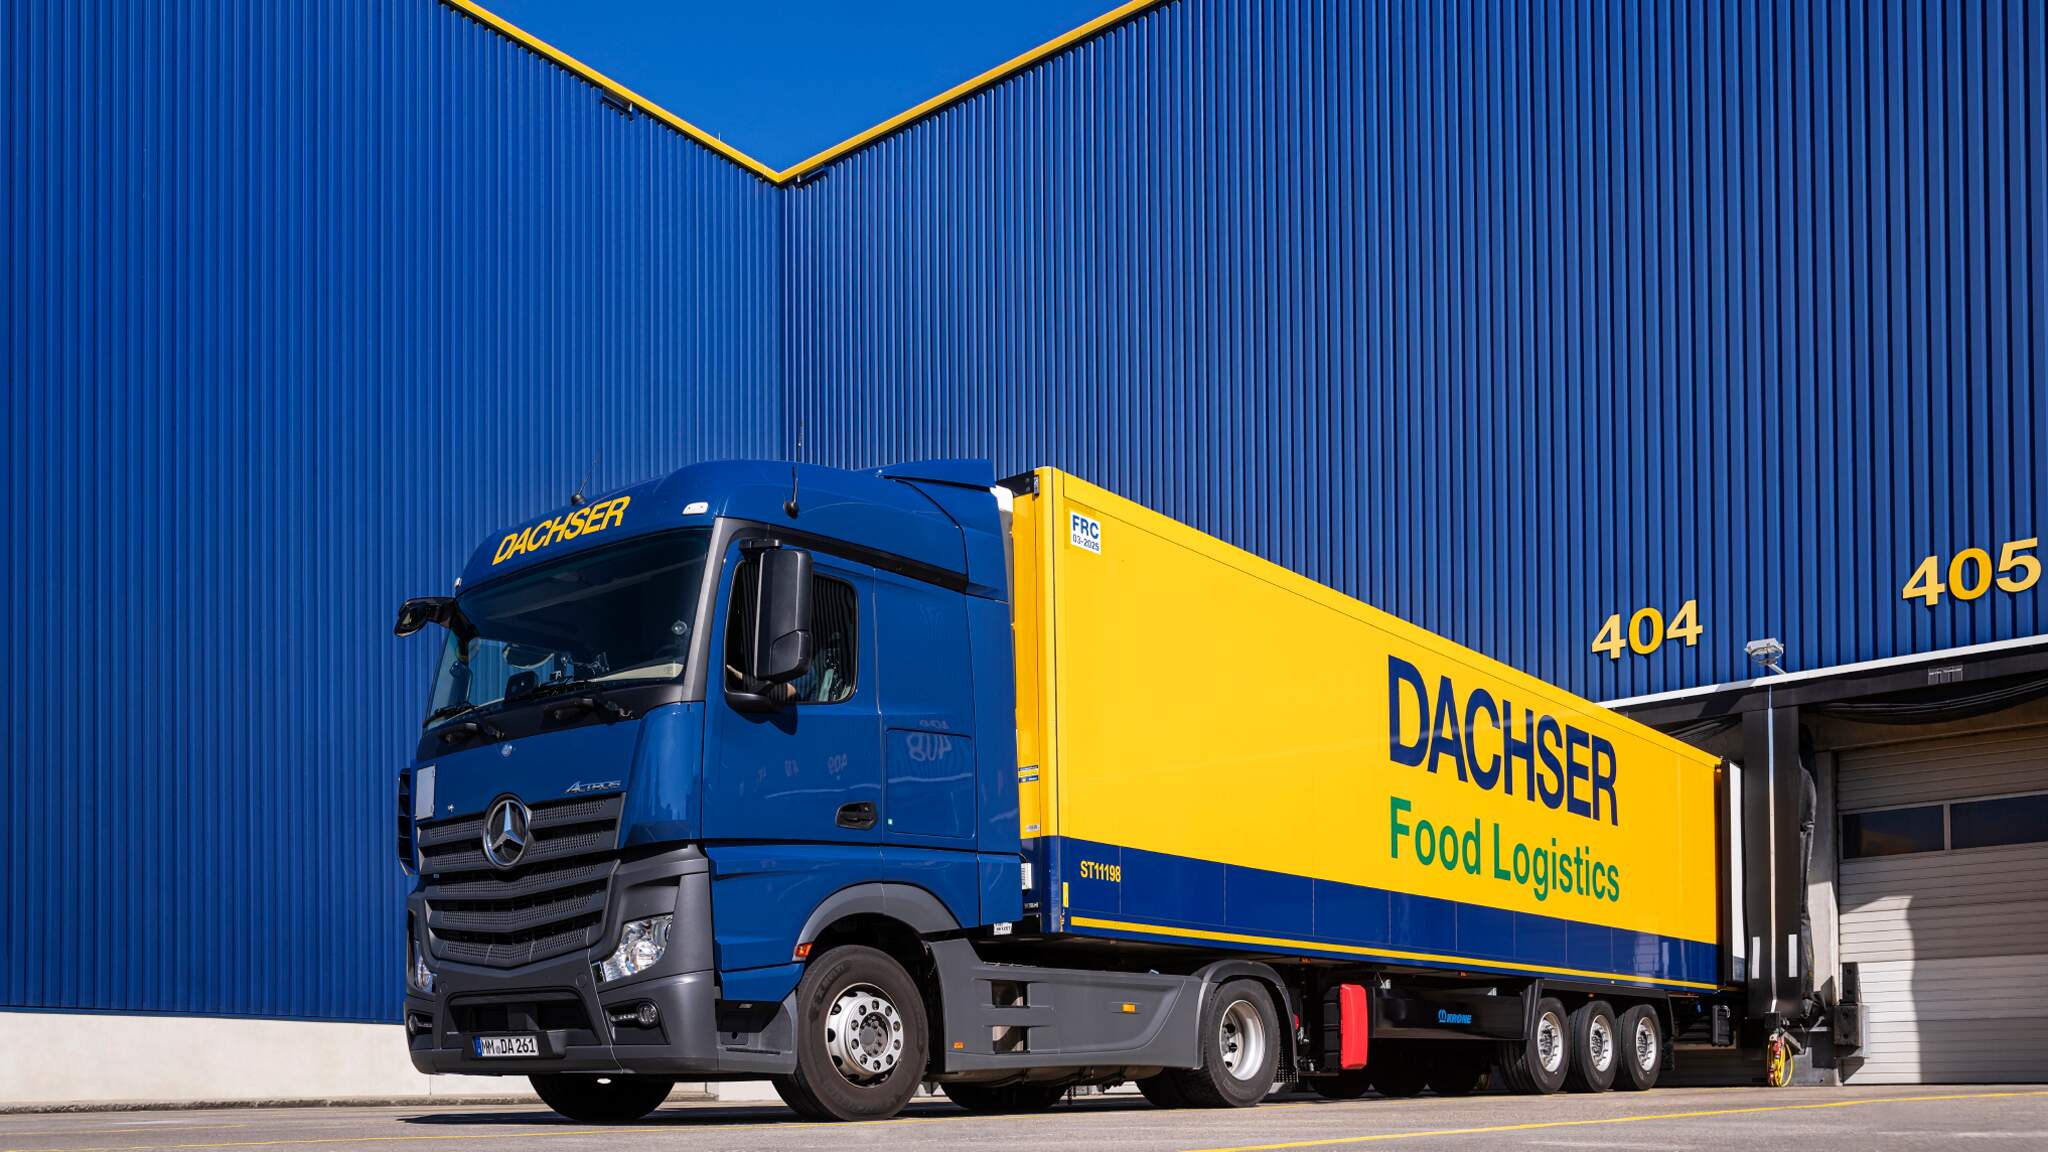 DACHSER Food Logistics and Heidelmann extend partnership